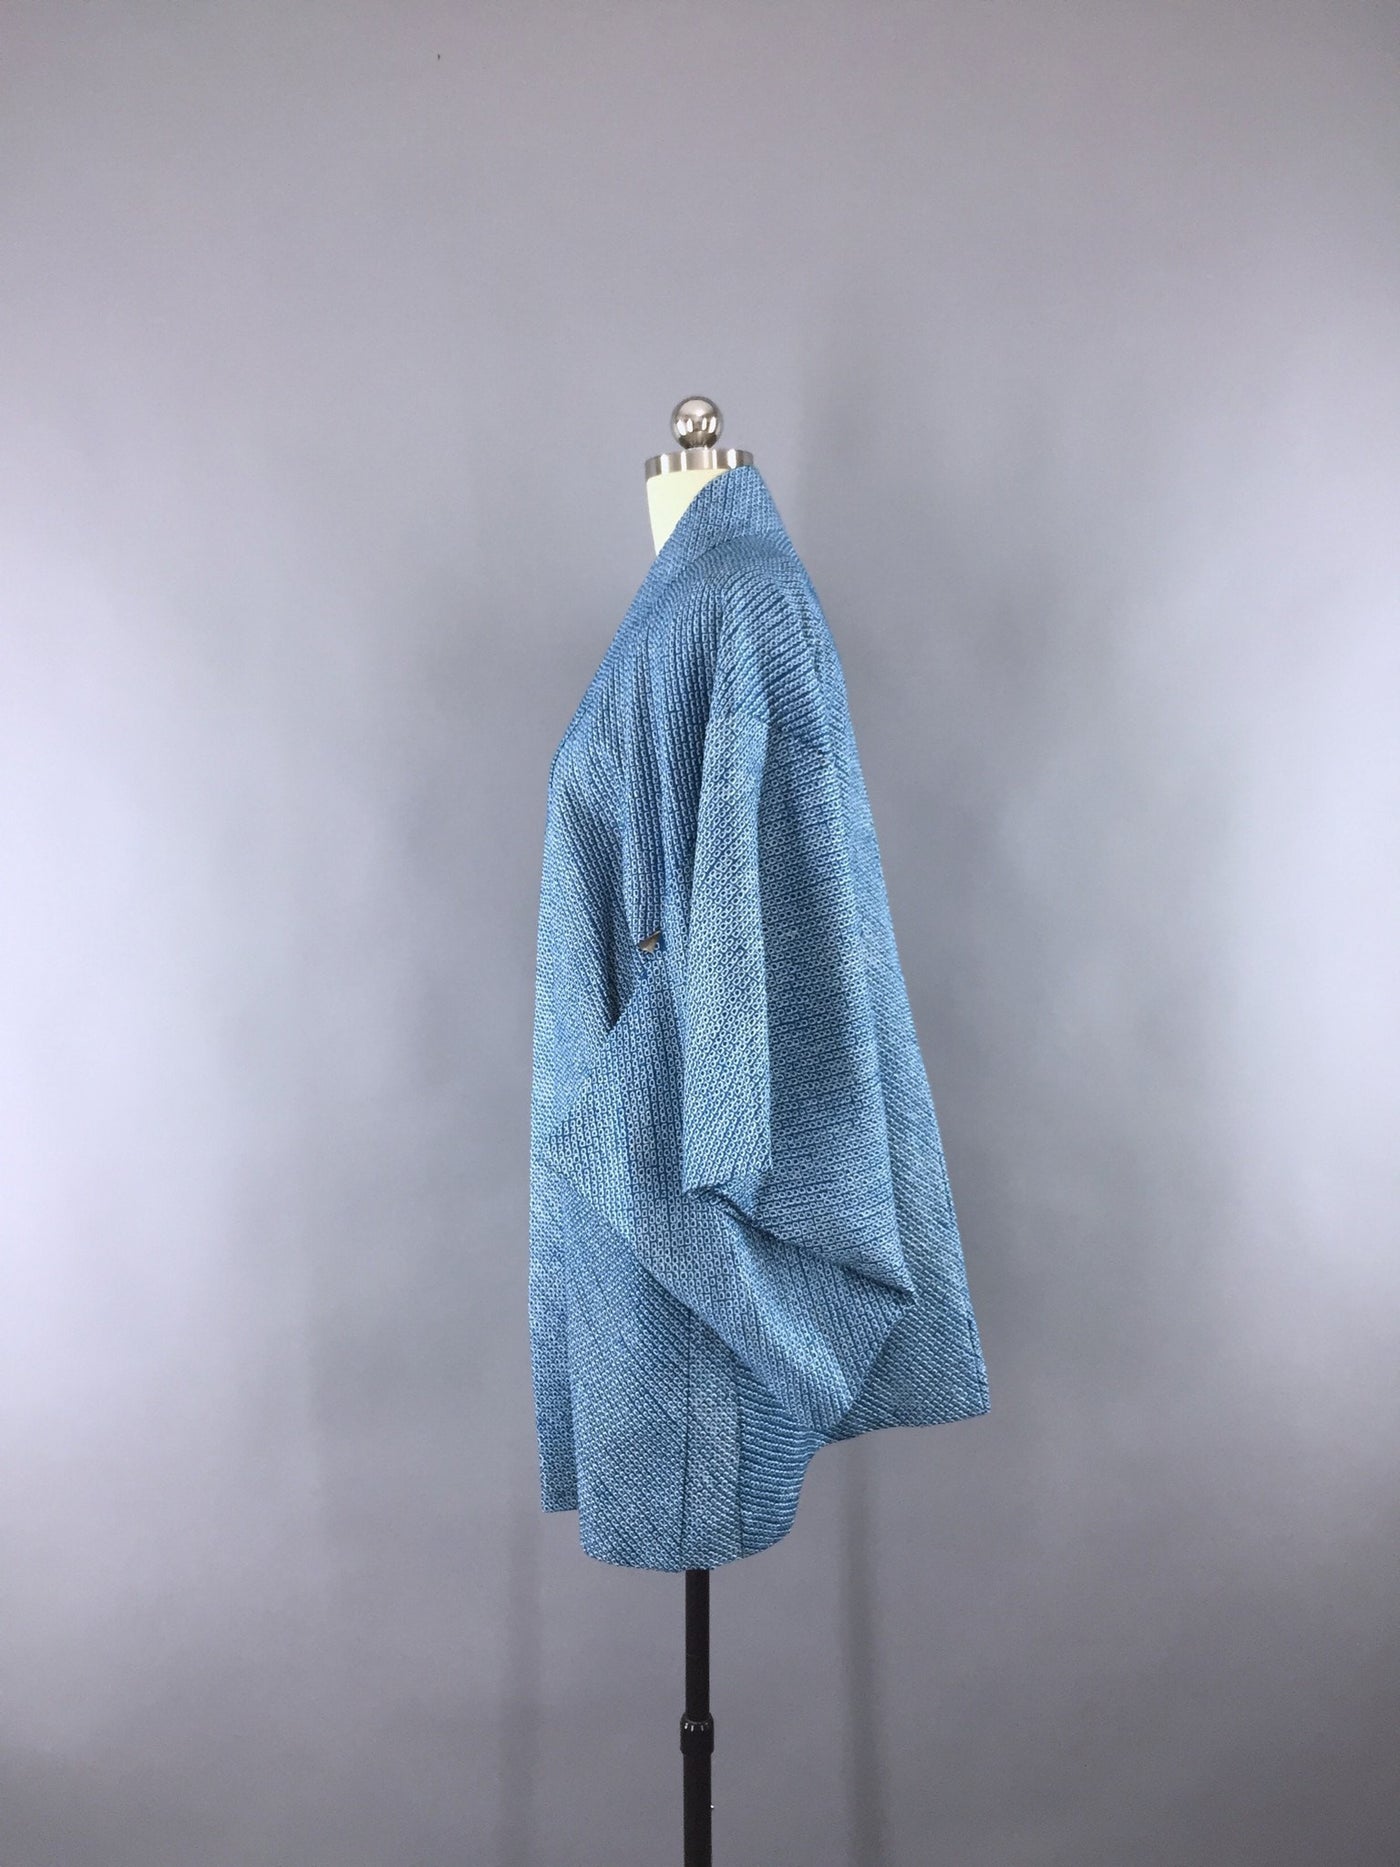 Vintage 1960s Silk Kimono Jacket Haori Cardigan Blue & White Shibori - ThisBlueBird